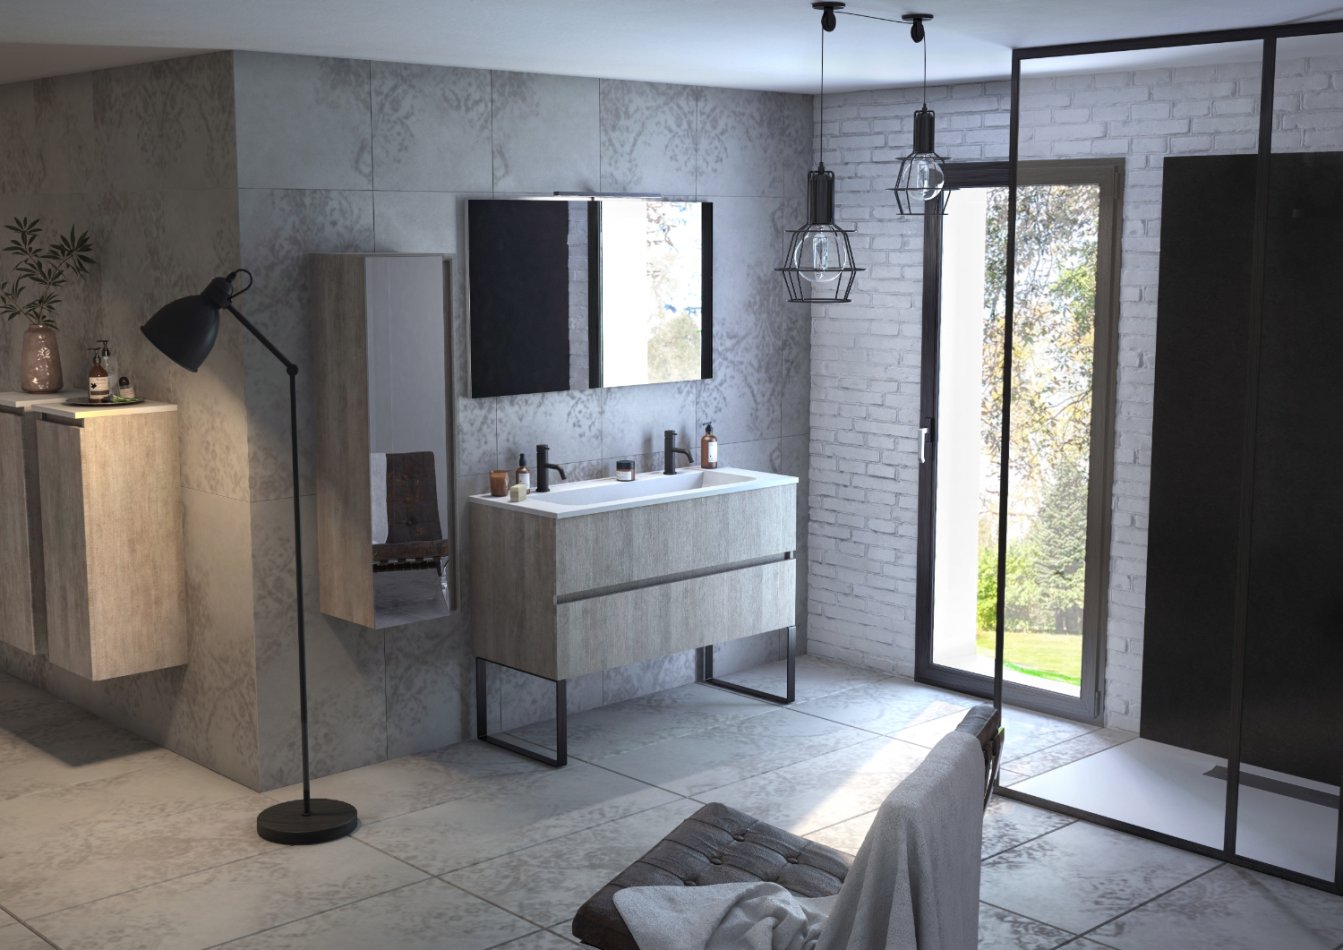 Carrelage de salle de bain gris, style industriel, meuble de salle de bains esprit scandinave.